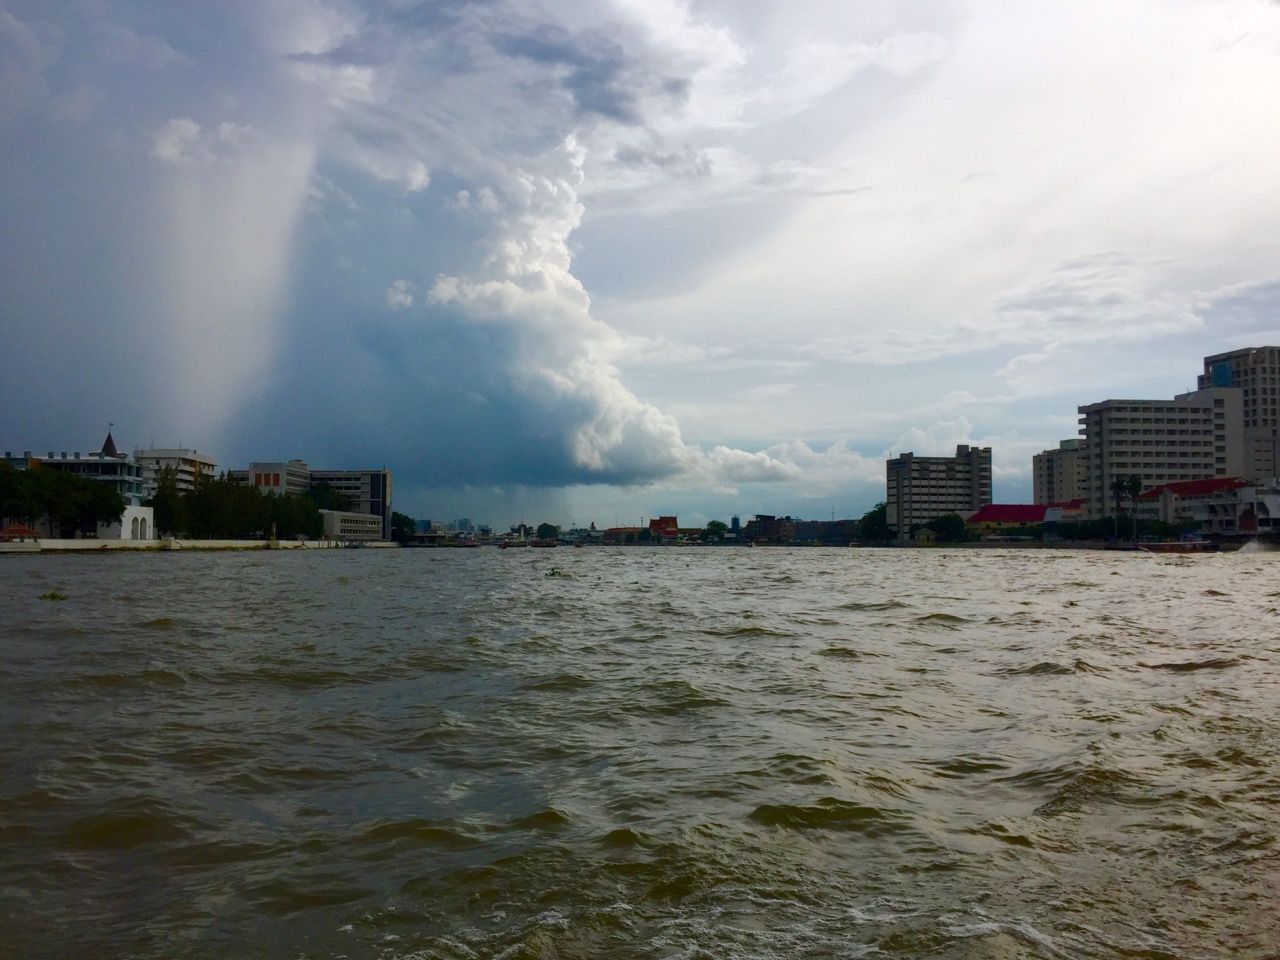 A large rain cloud above a river.